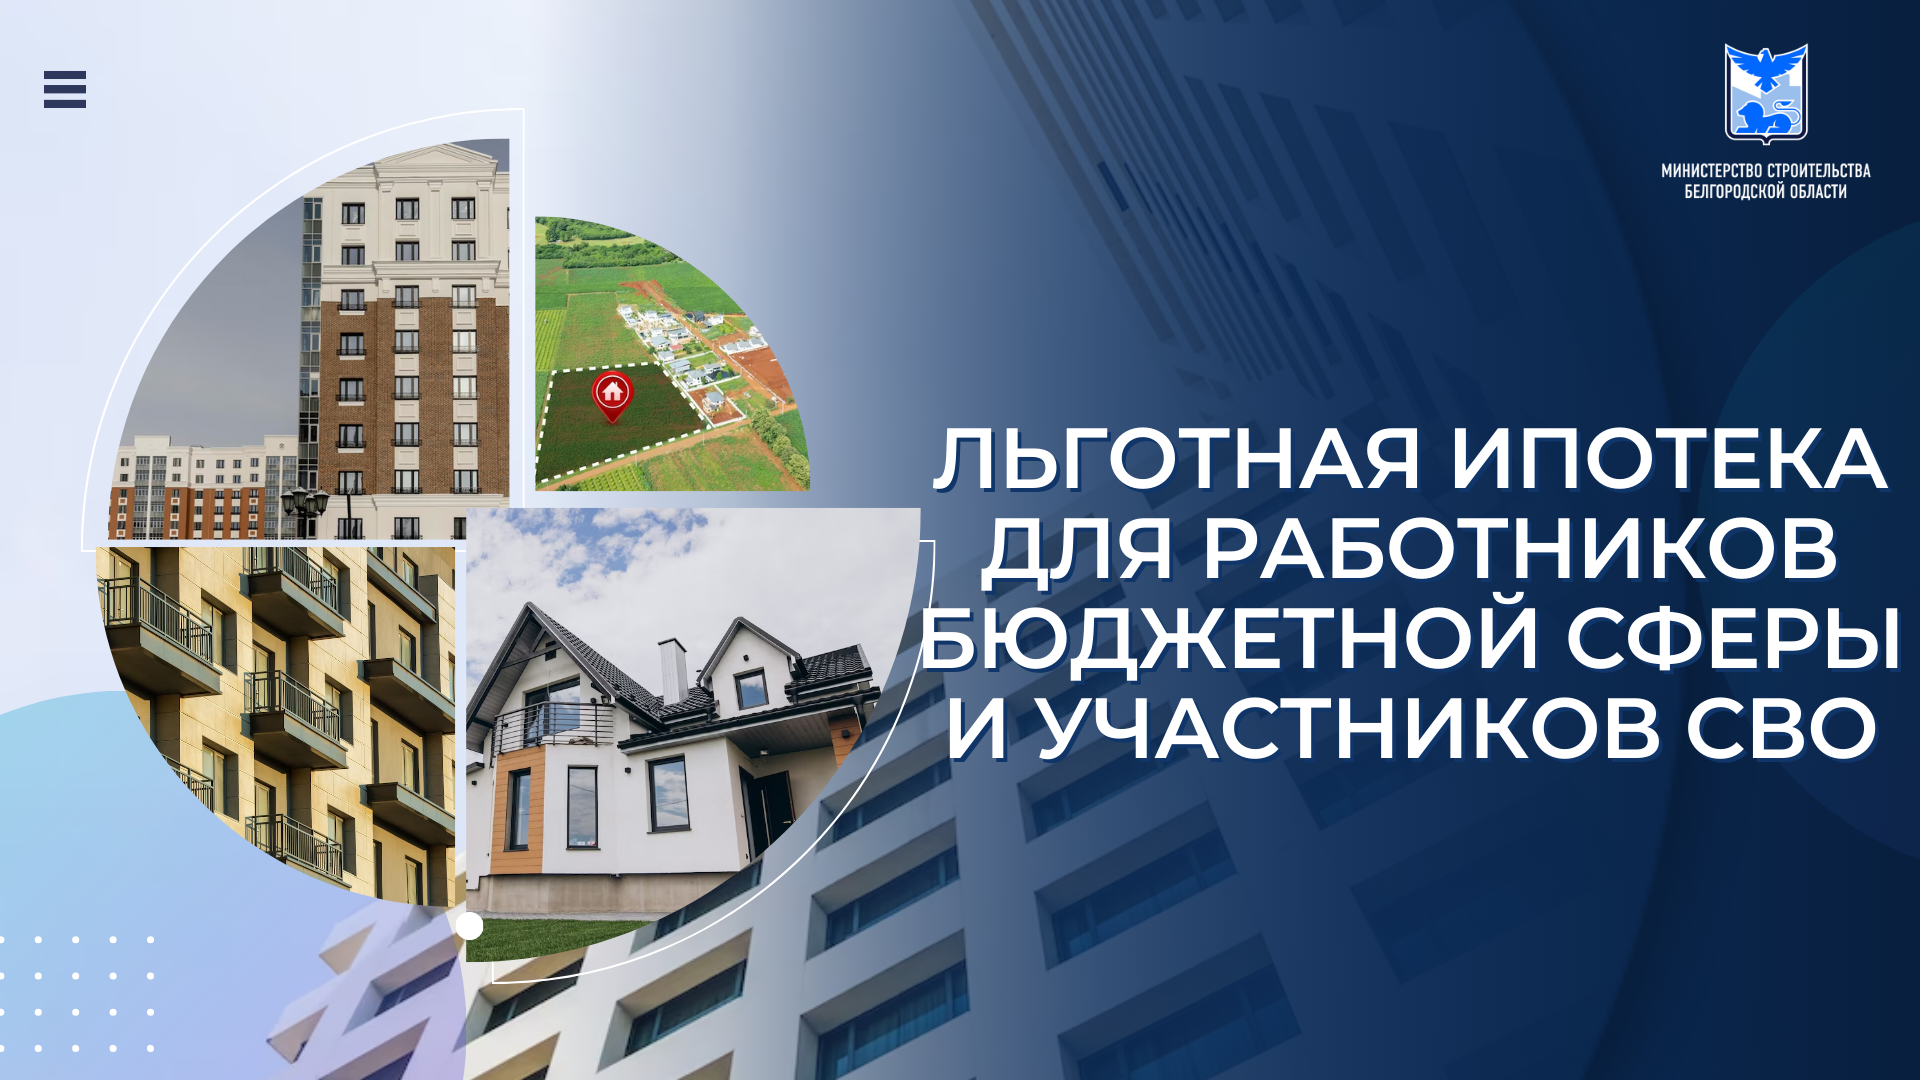 На территории Белгородской области продолжает действовать программа льготного ипотечного кредитования «Губернаторская ипотека».